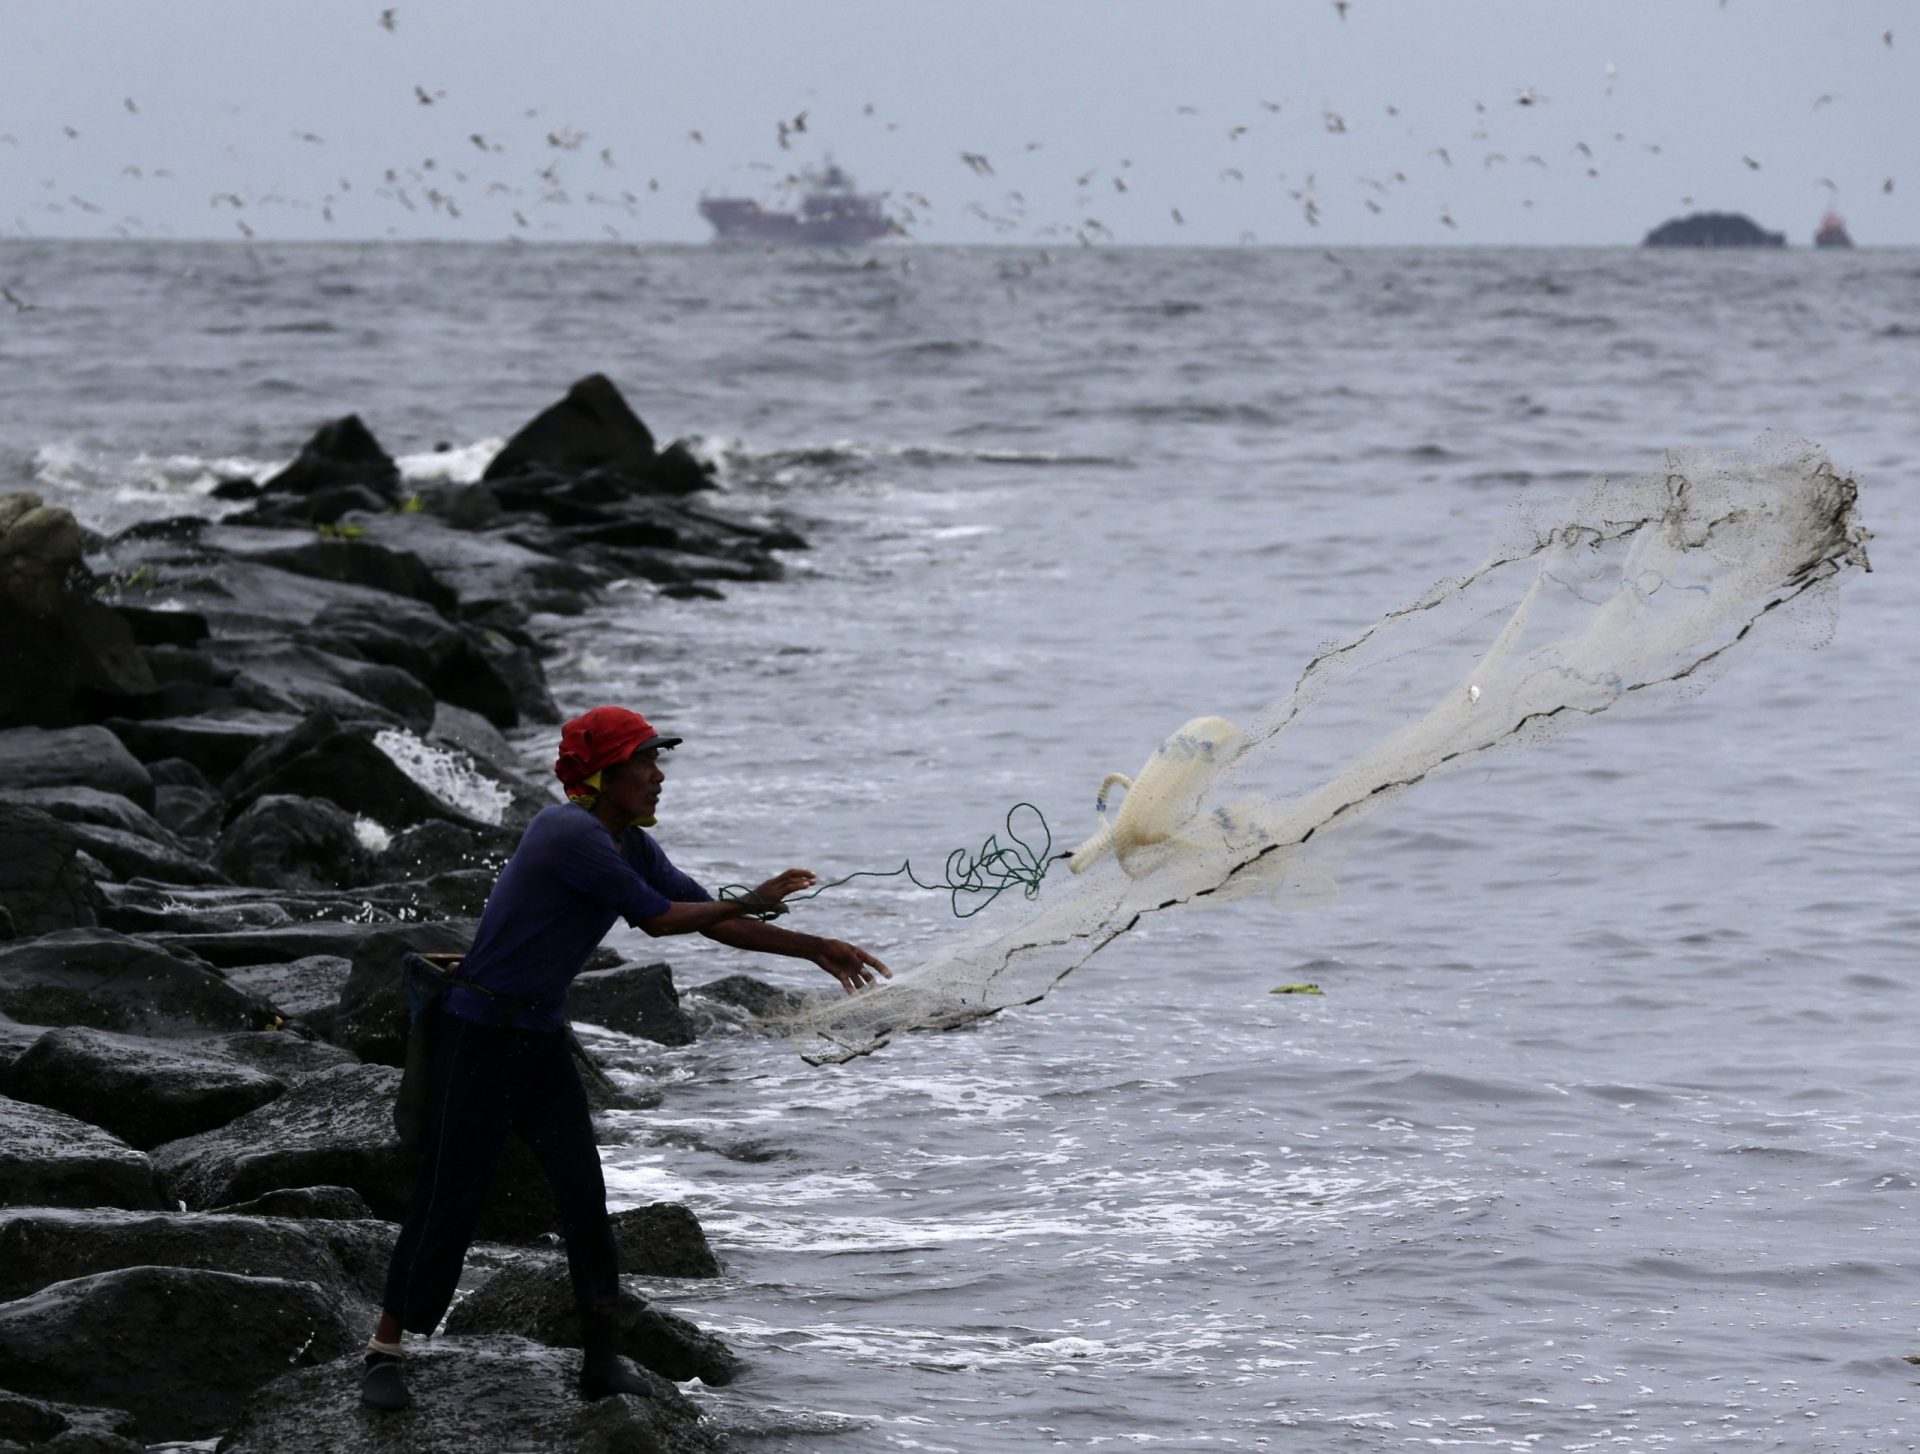 Filipinas: Tufão faz desaparecer 121 pescadores